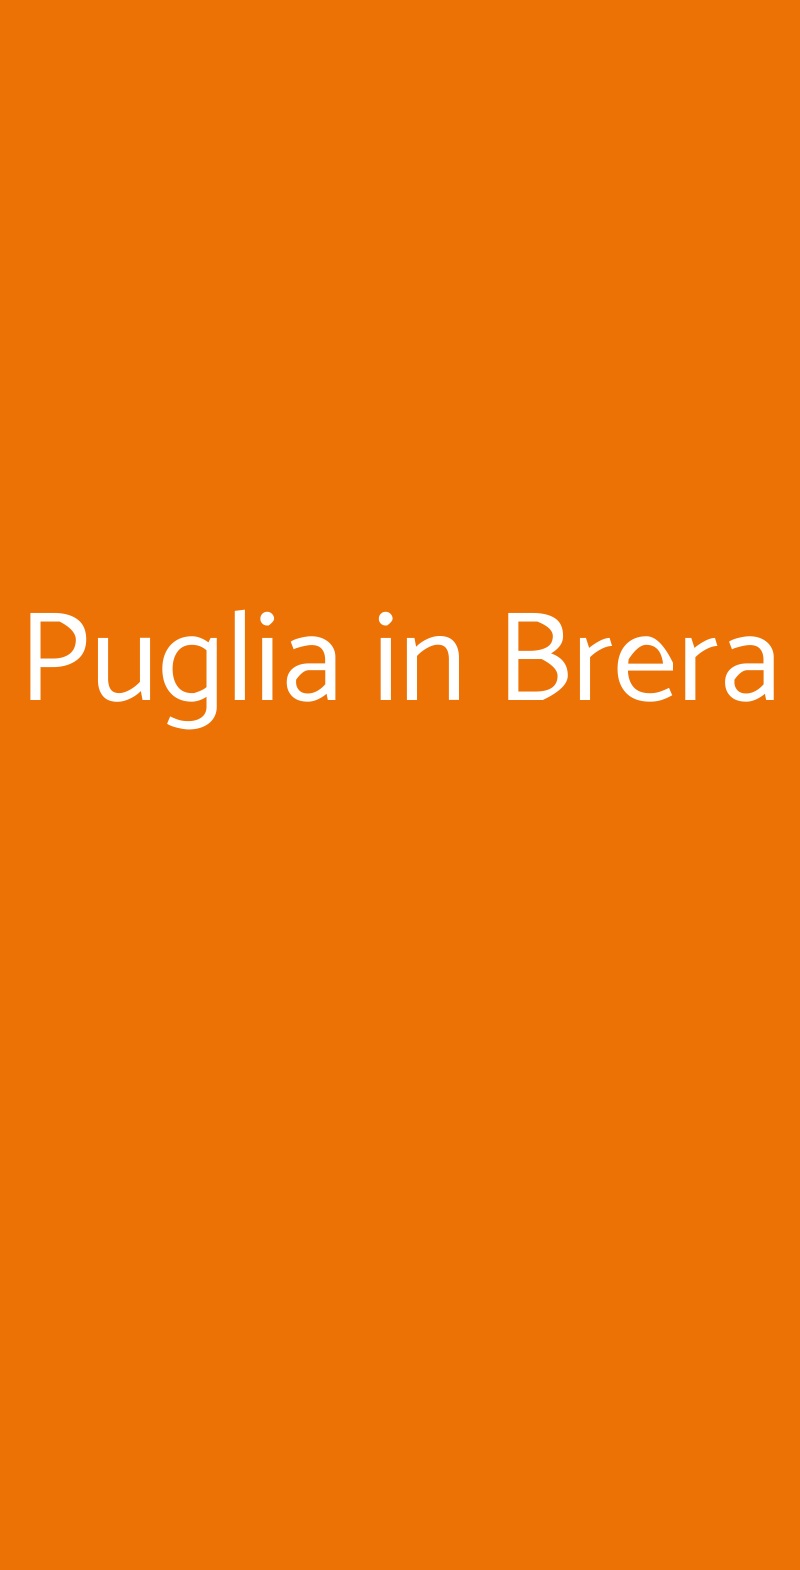 Puglia in Brera Milano menù 1 pagina